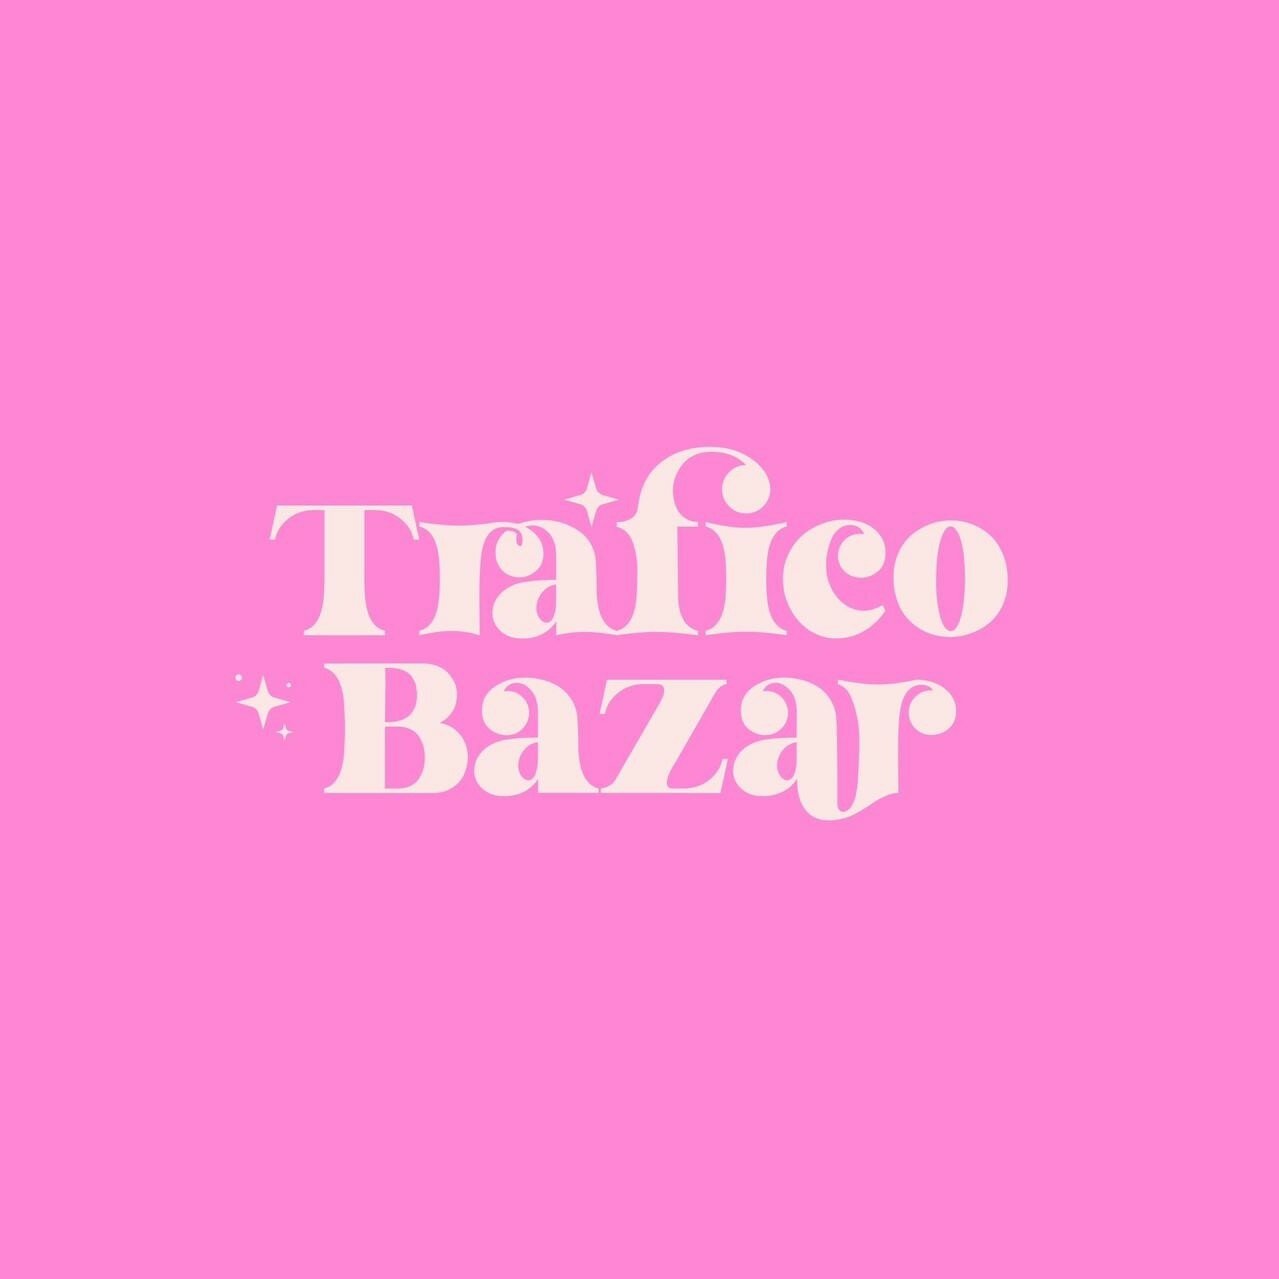 Tráfico bazar logo